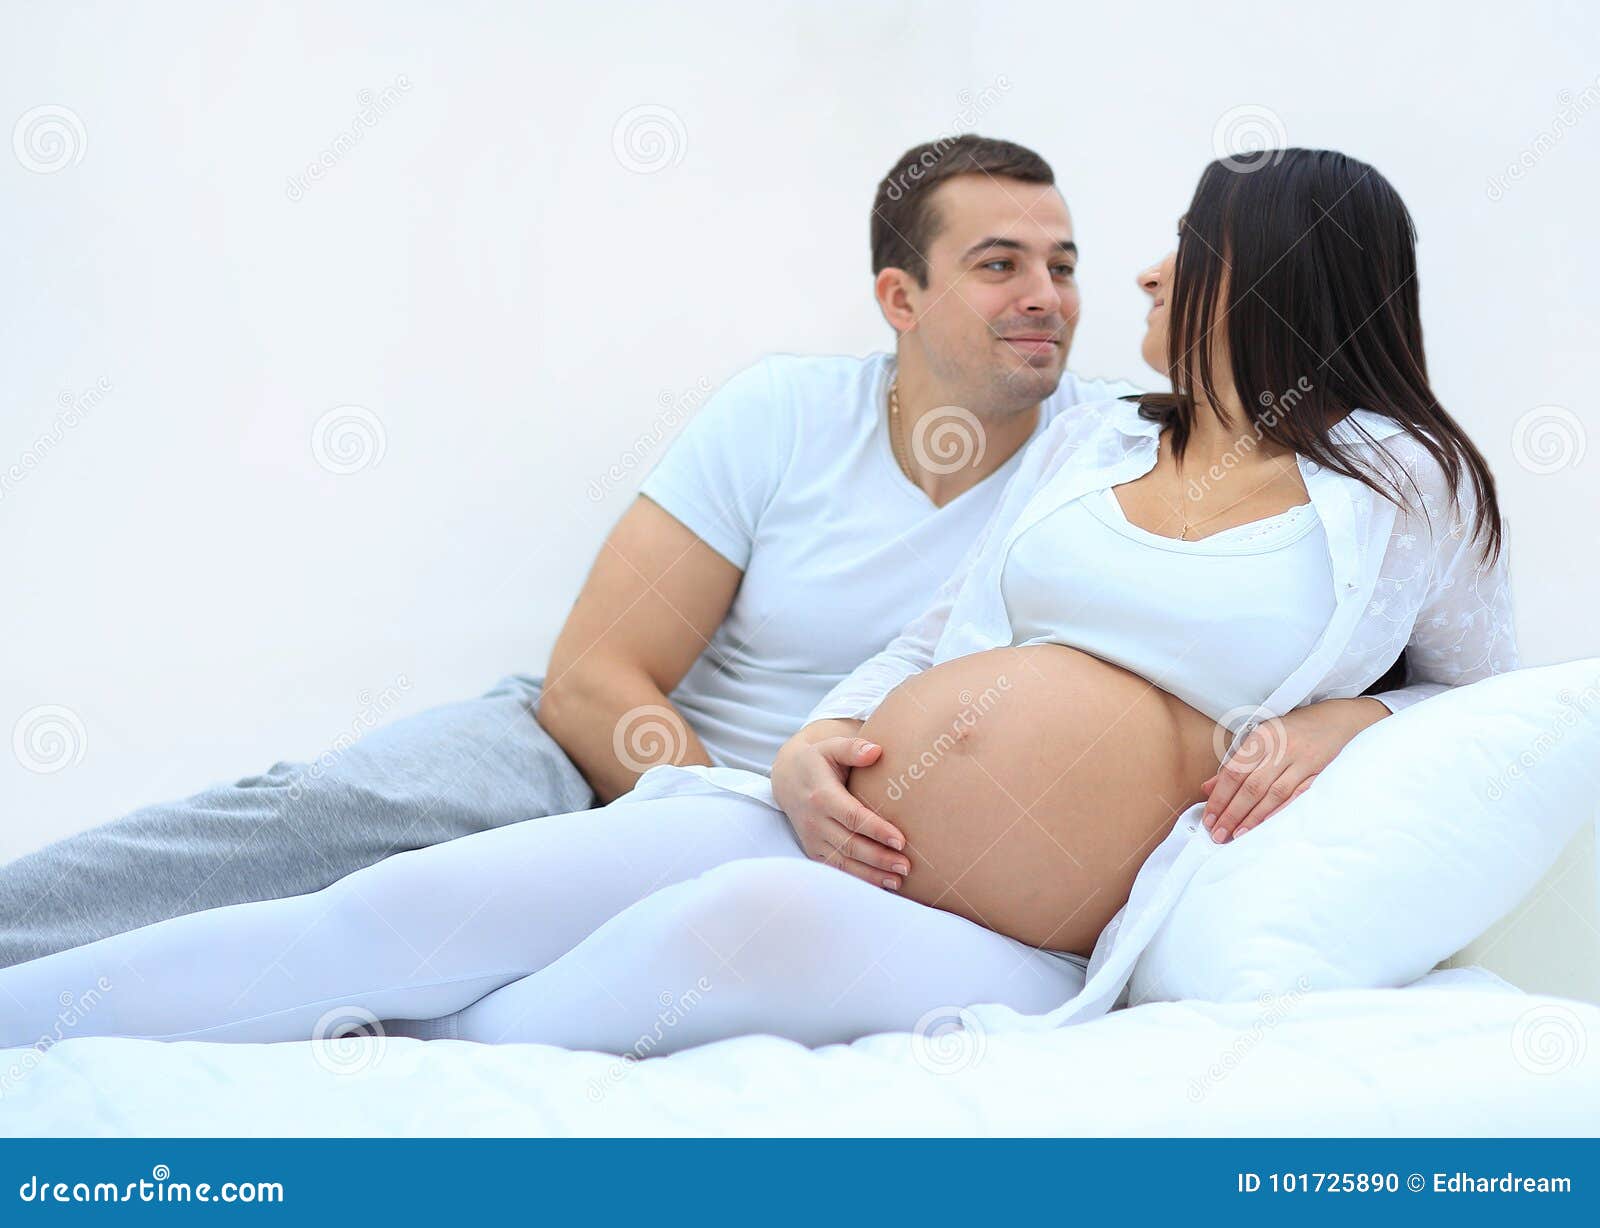 Русская жена забеременела